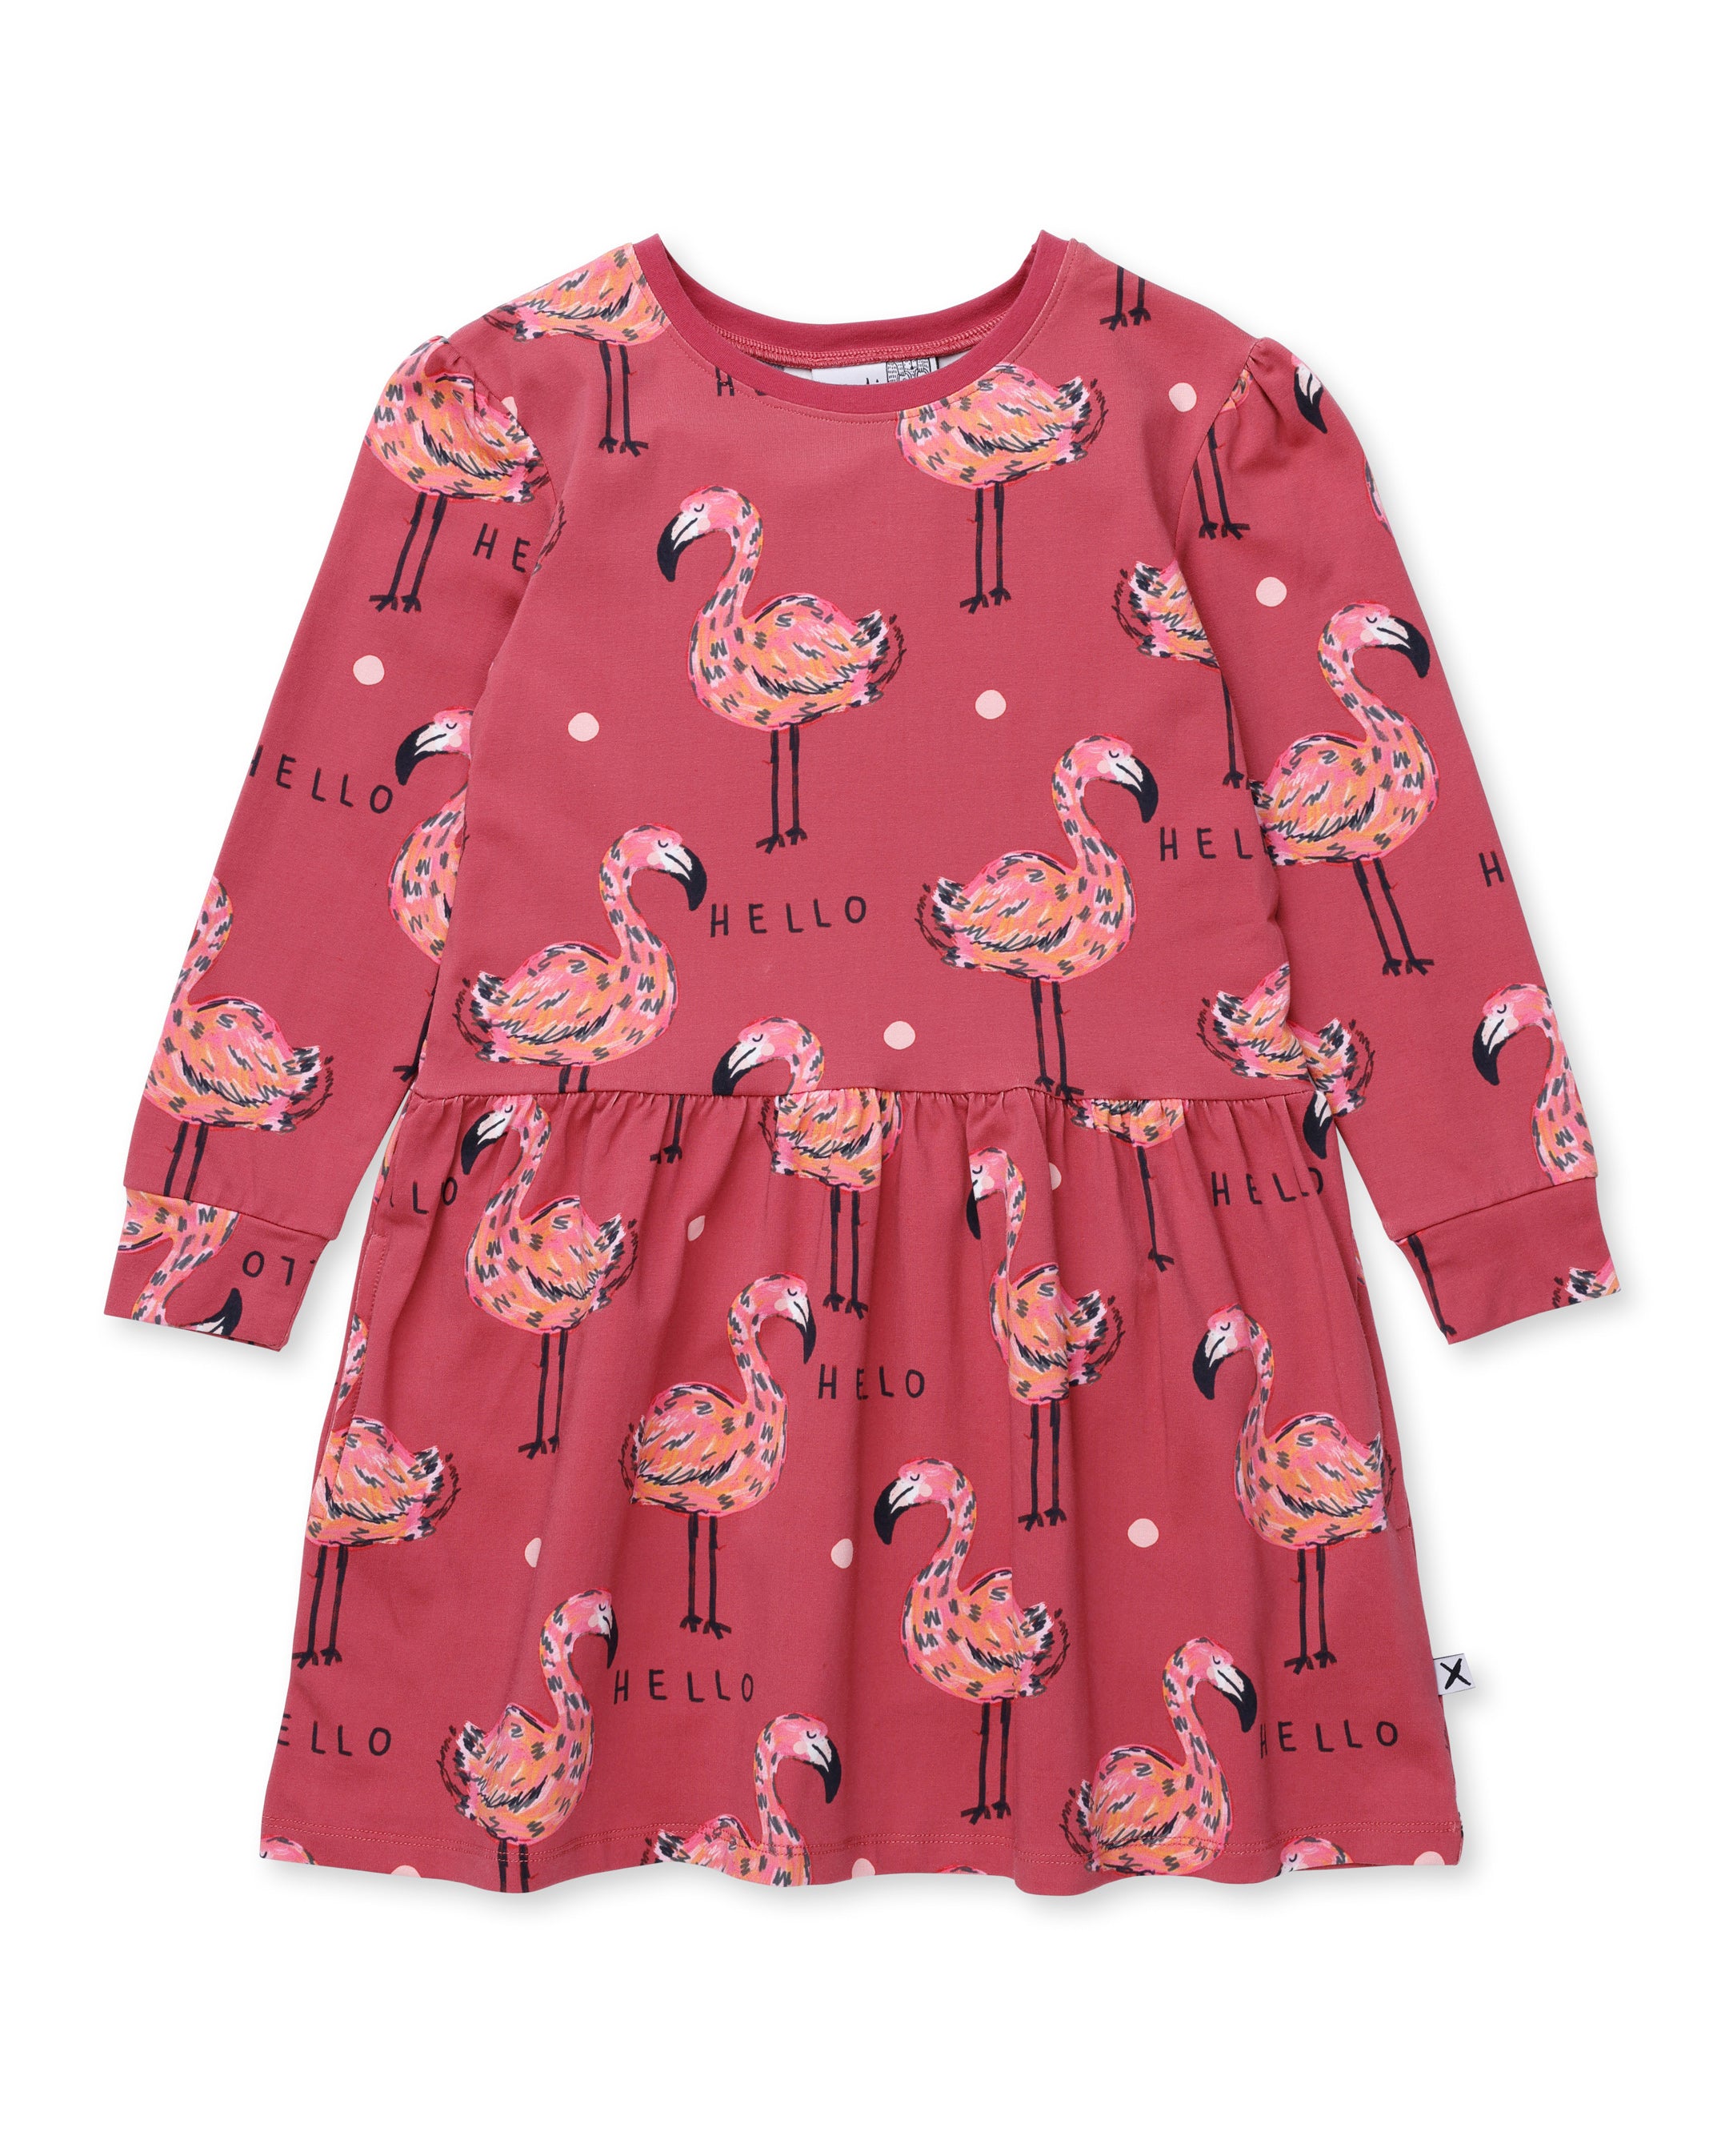 Minti | Flamingo Party Dress